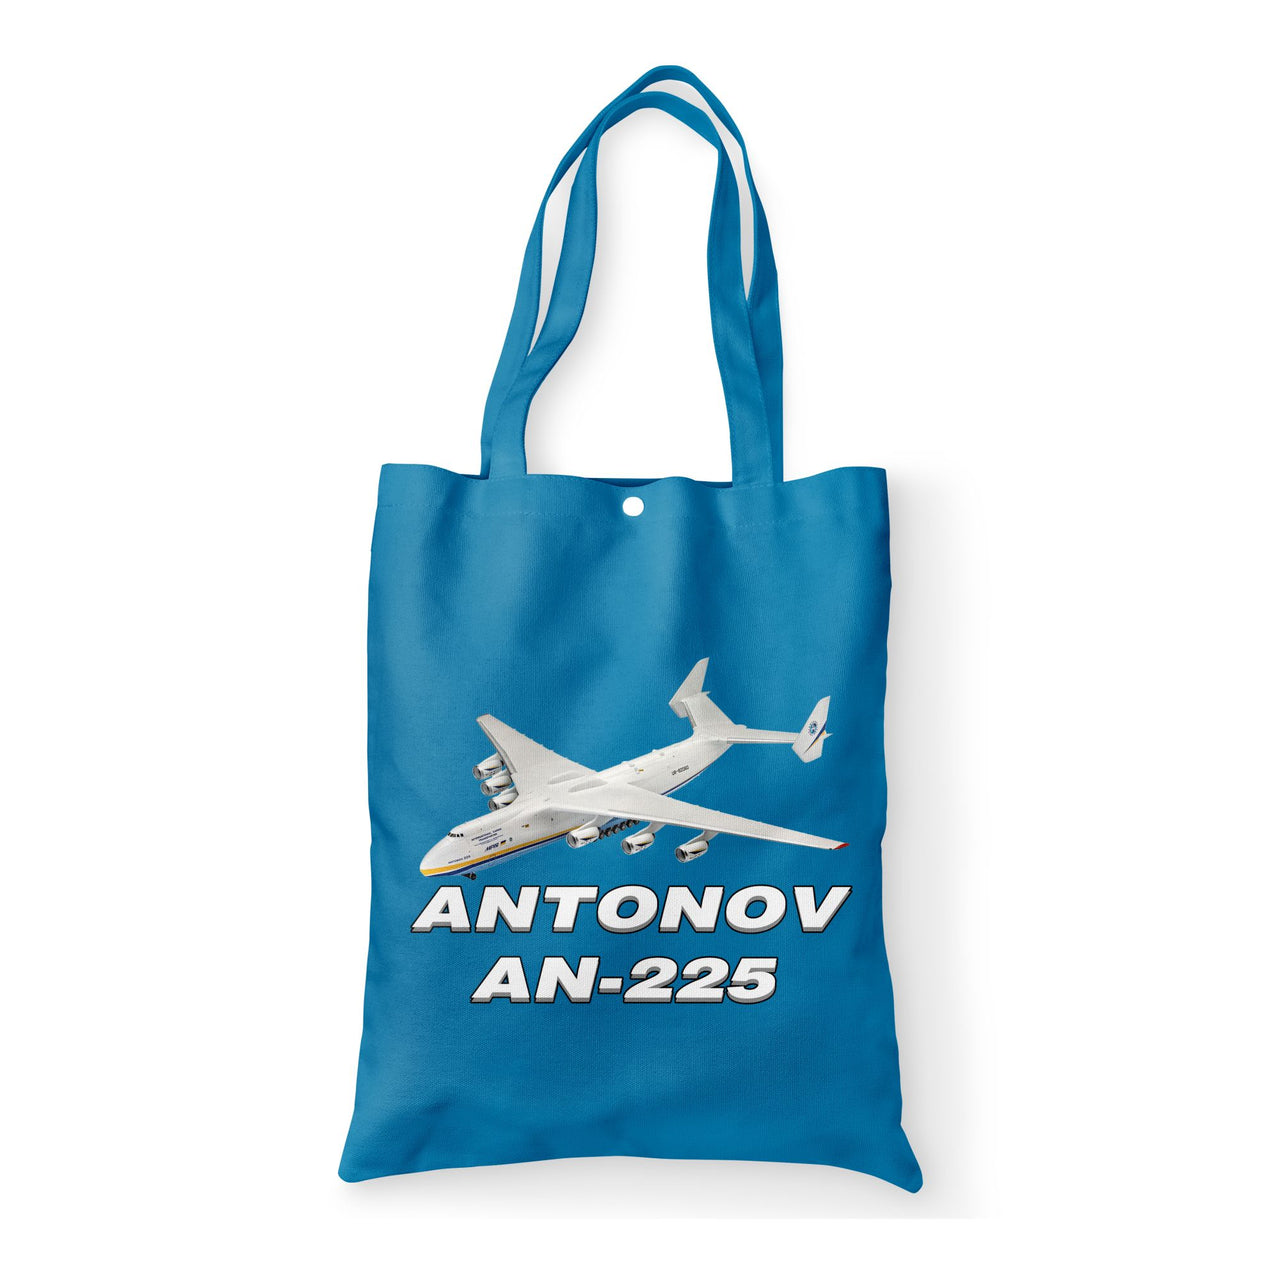 Antonov AN-225 (12) Designed Tote Bags